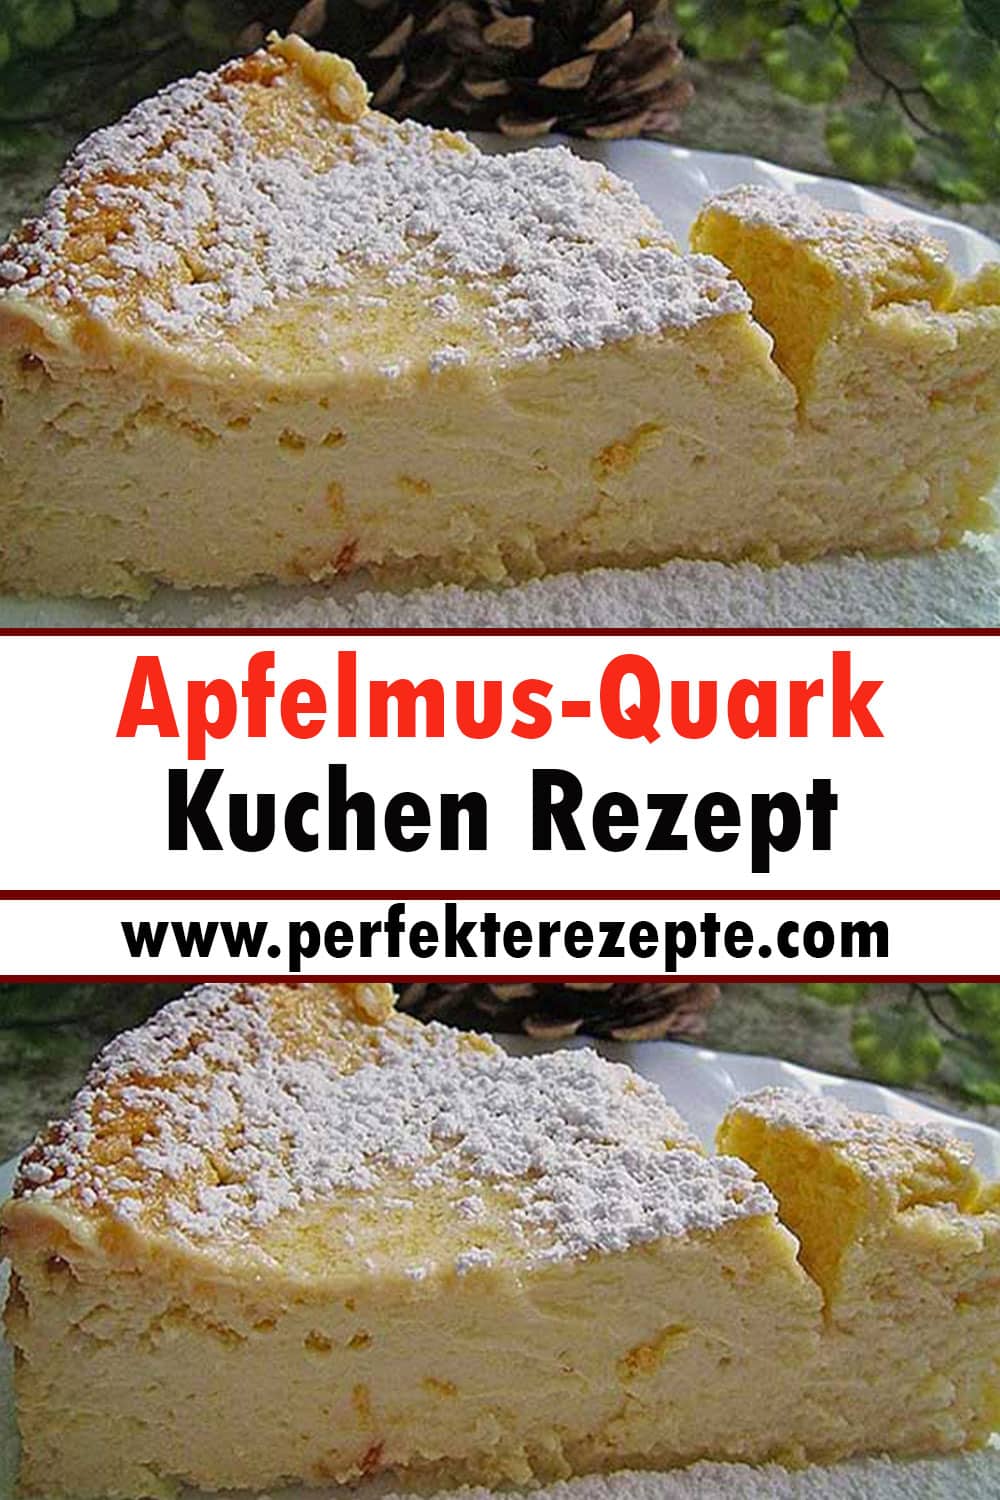 Apfelmus-Quark Kuchen Rezept